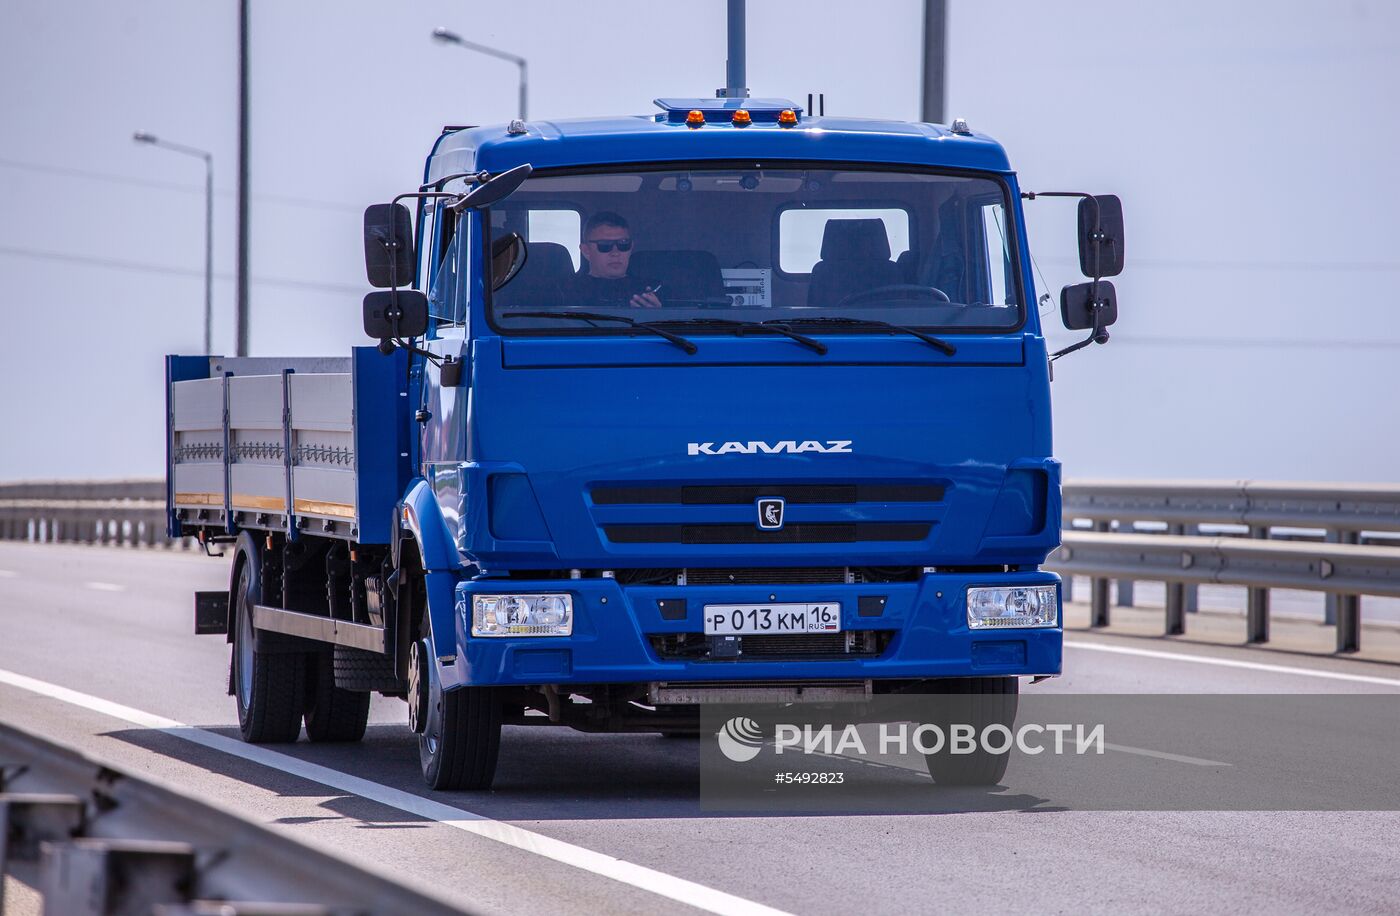 Тестовые испытания российских беспилотных автомобилей на автоподходах к Крымскому мосту